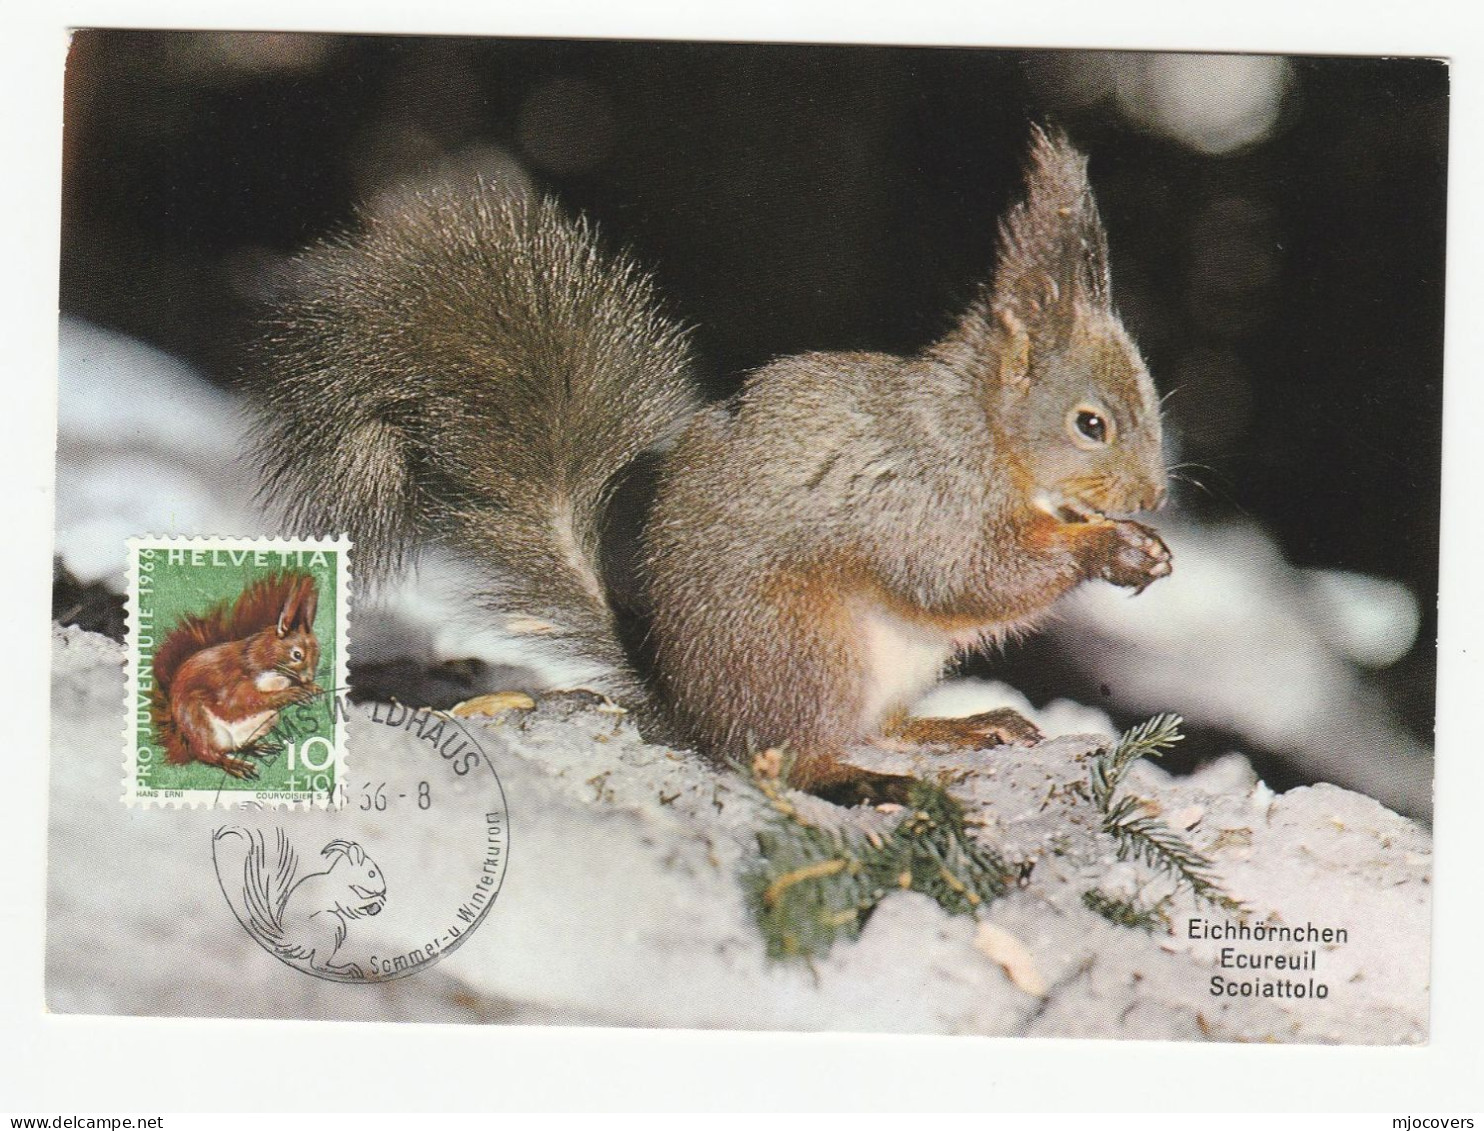 1966 SQUIRREL Maximum CARD Switzerland Stamps Fdc Cover Postcard - Cartes-Maximum (CM)